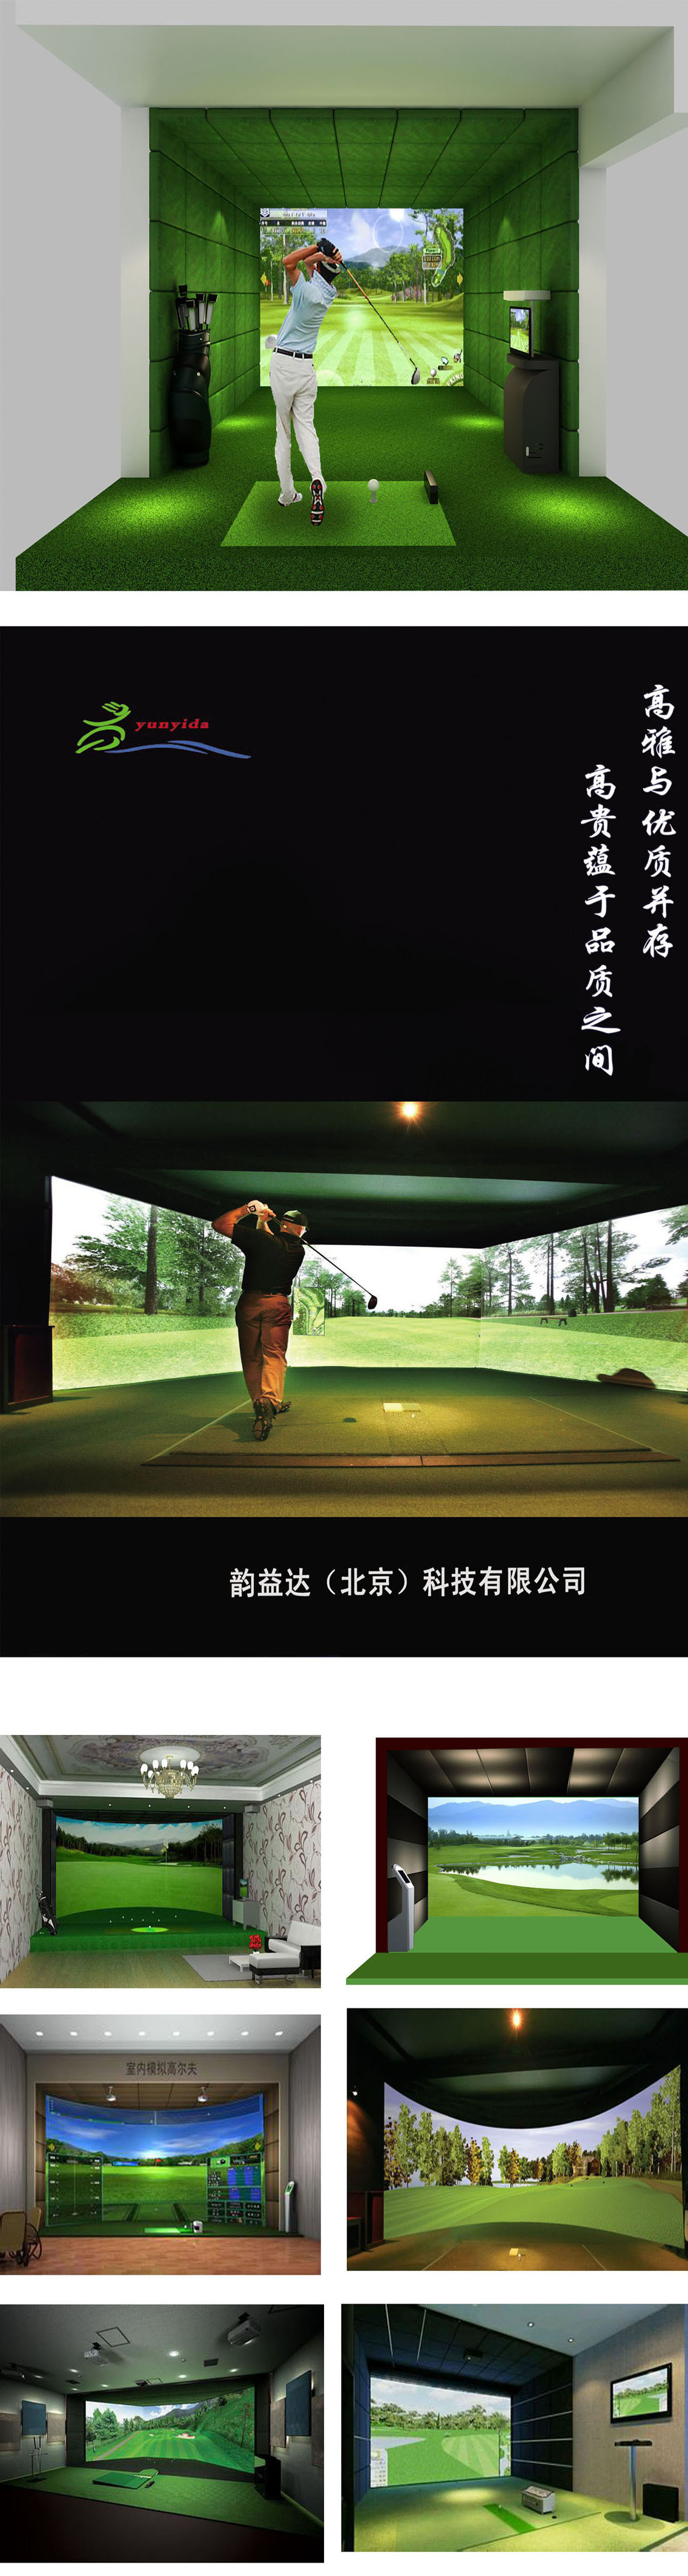 高尔夫模拟器球场 三.jpg